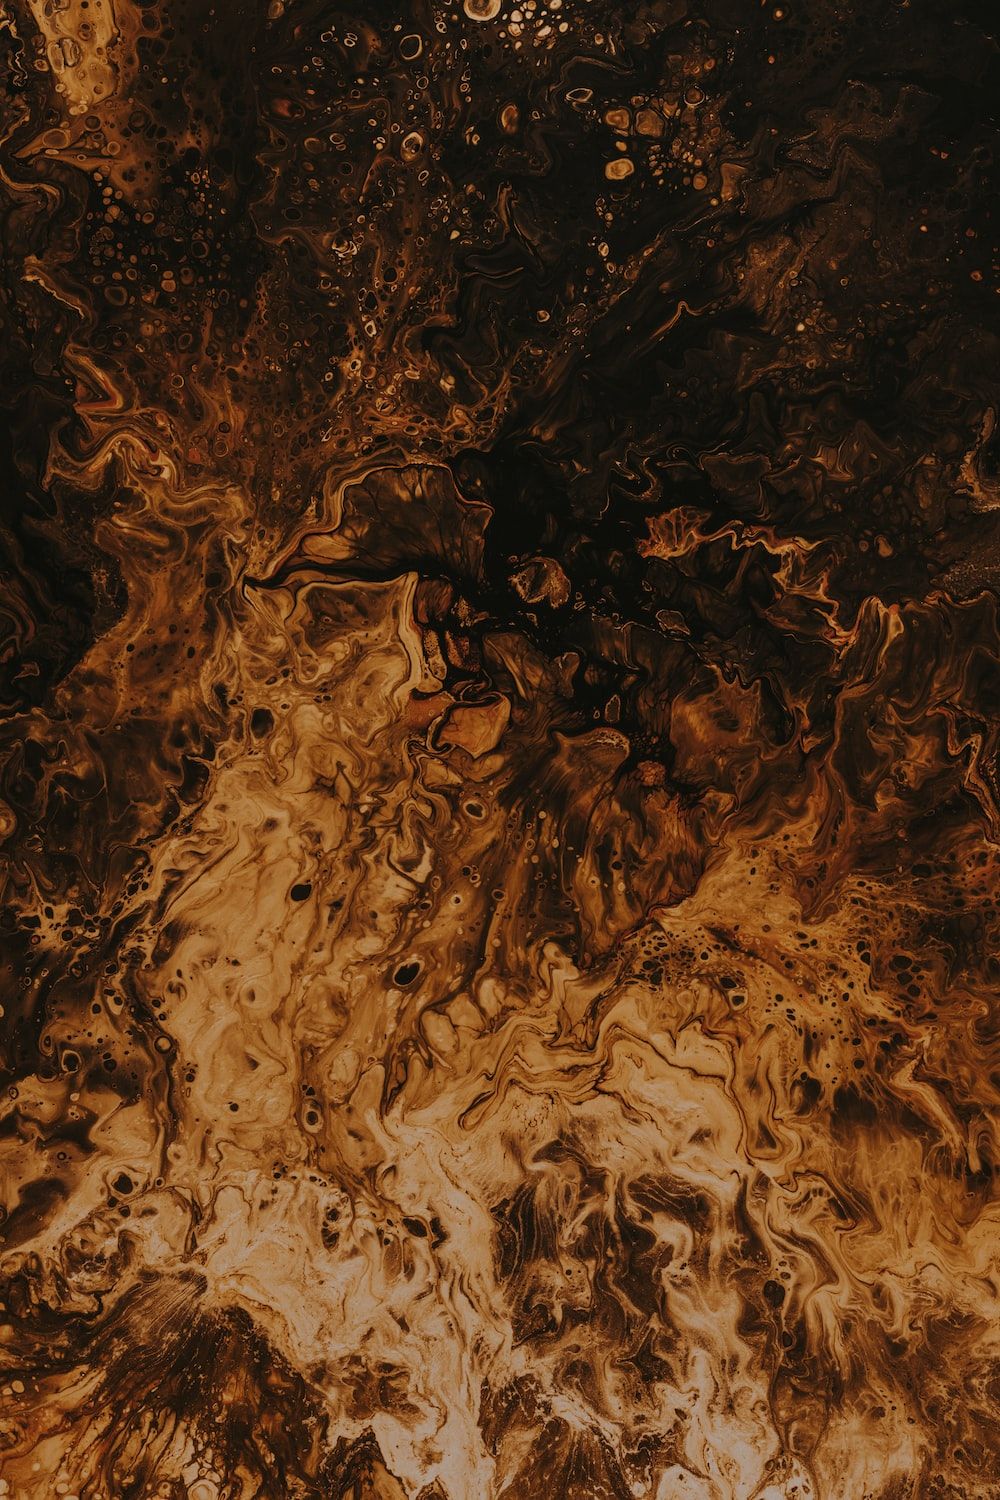  Braune Hintergrundbild 1000x1500. Foto zum Thema Braune und schwarze abstrakte Malerei